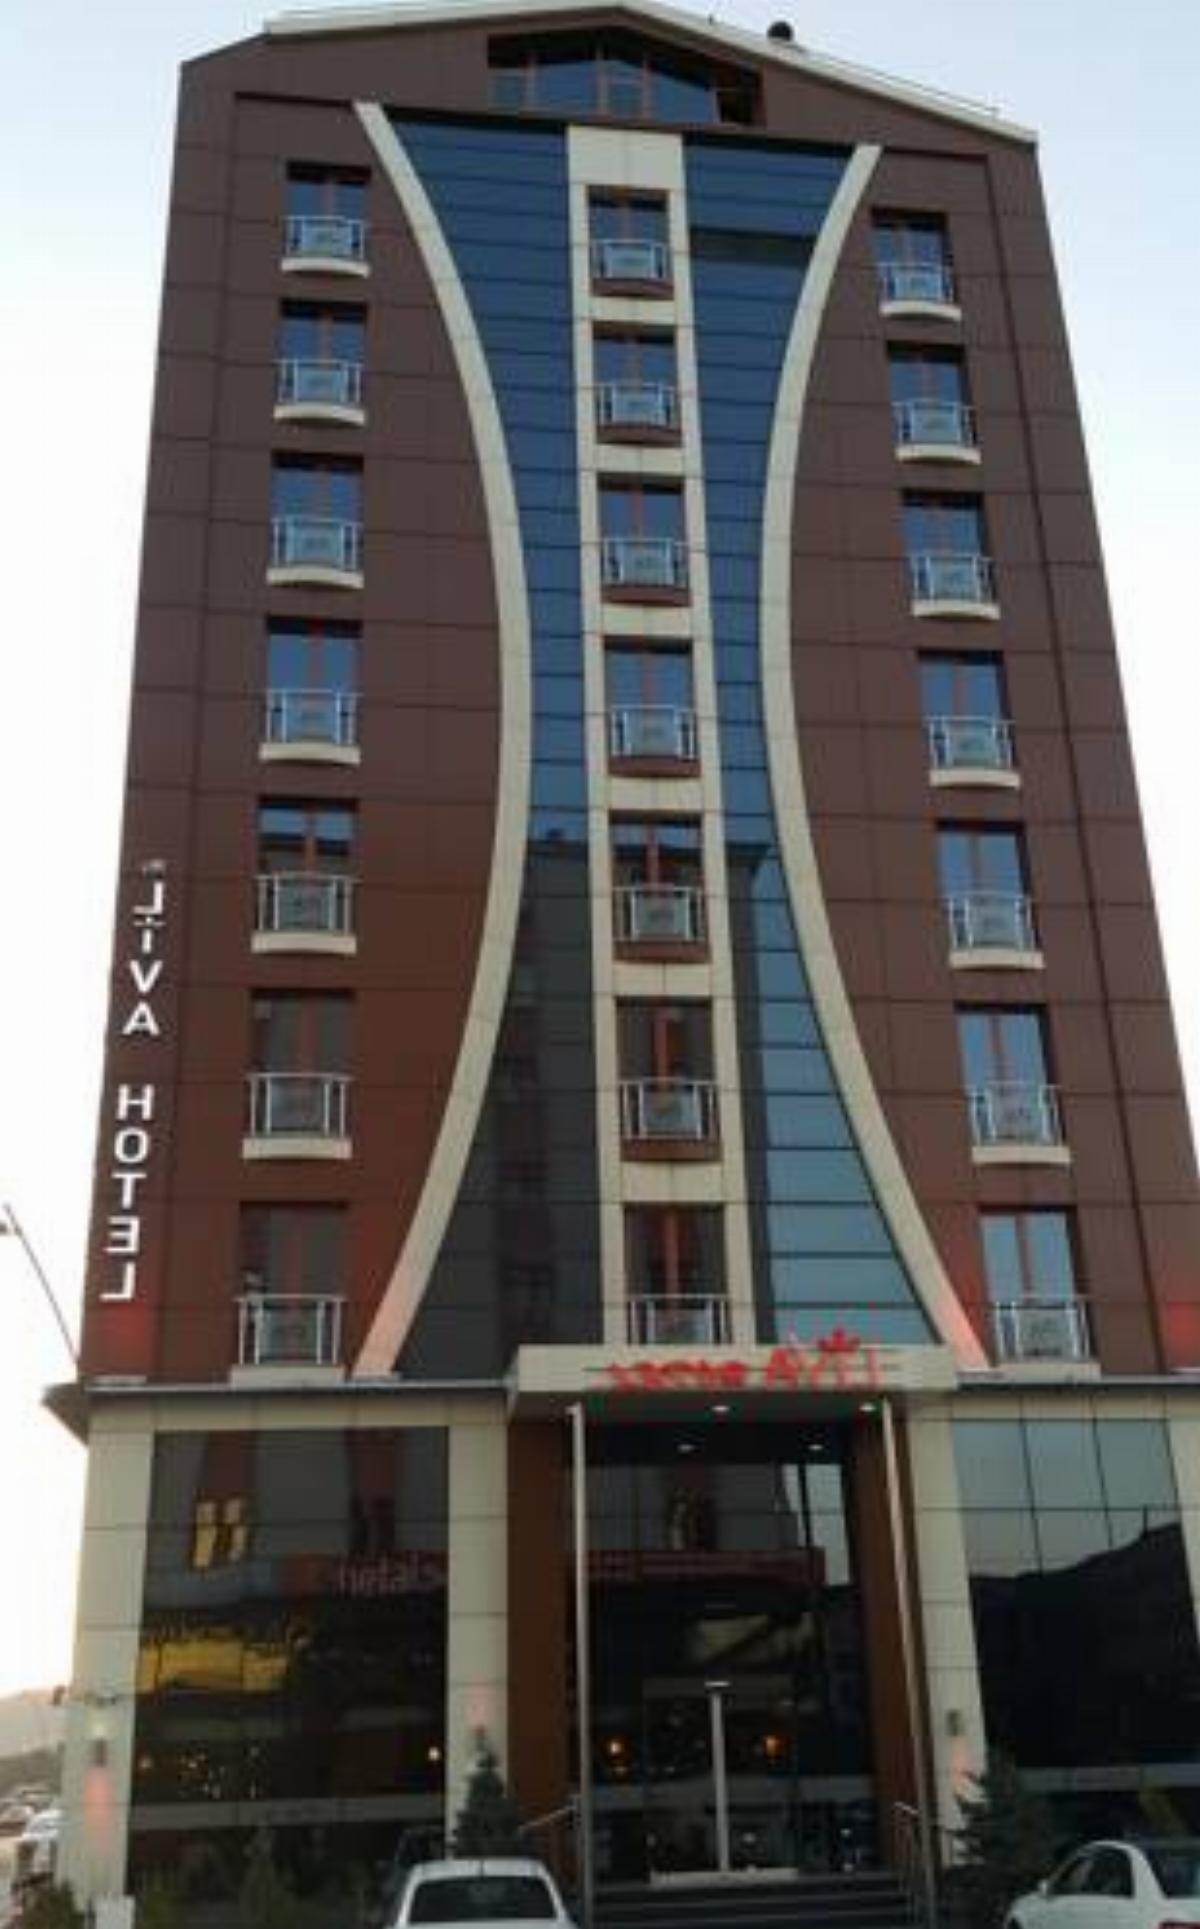 My Liva Hotel Hotel Kayseri Turkey